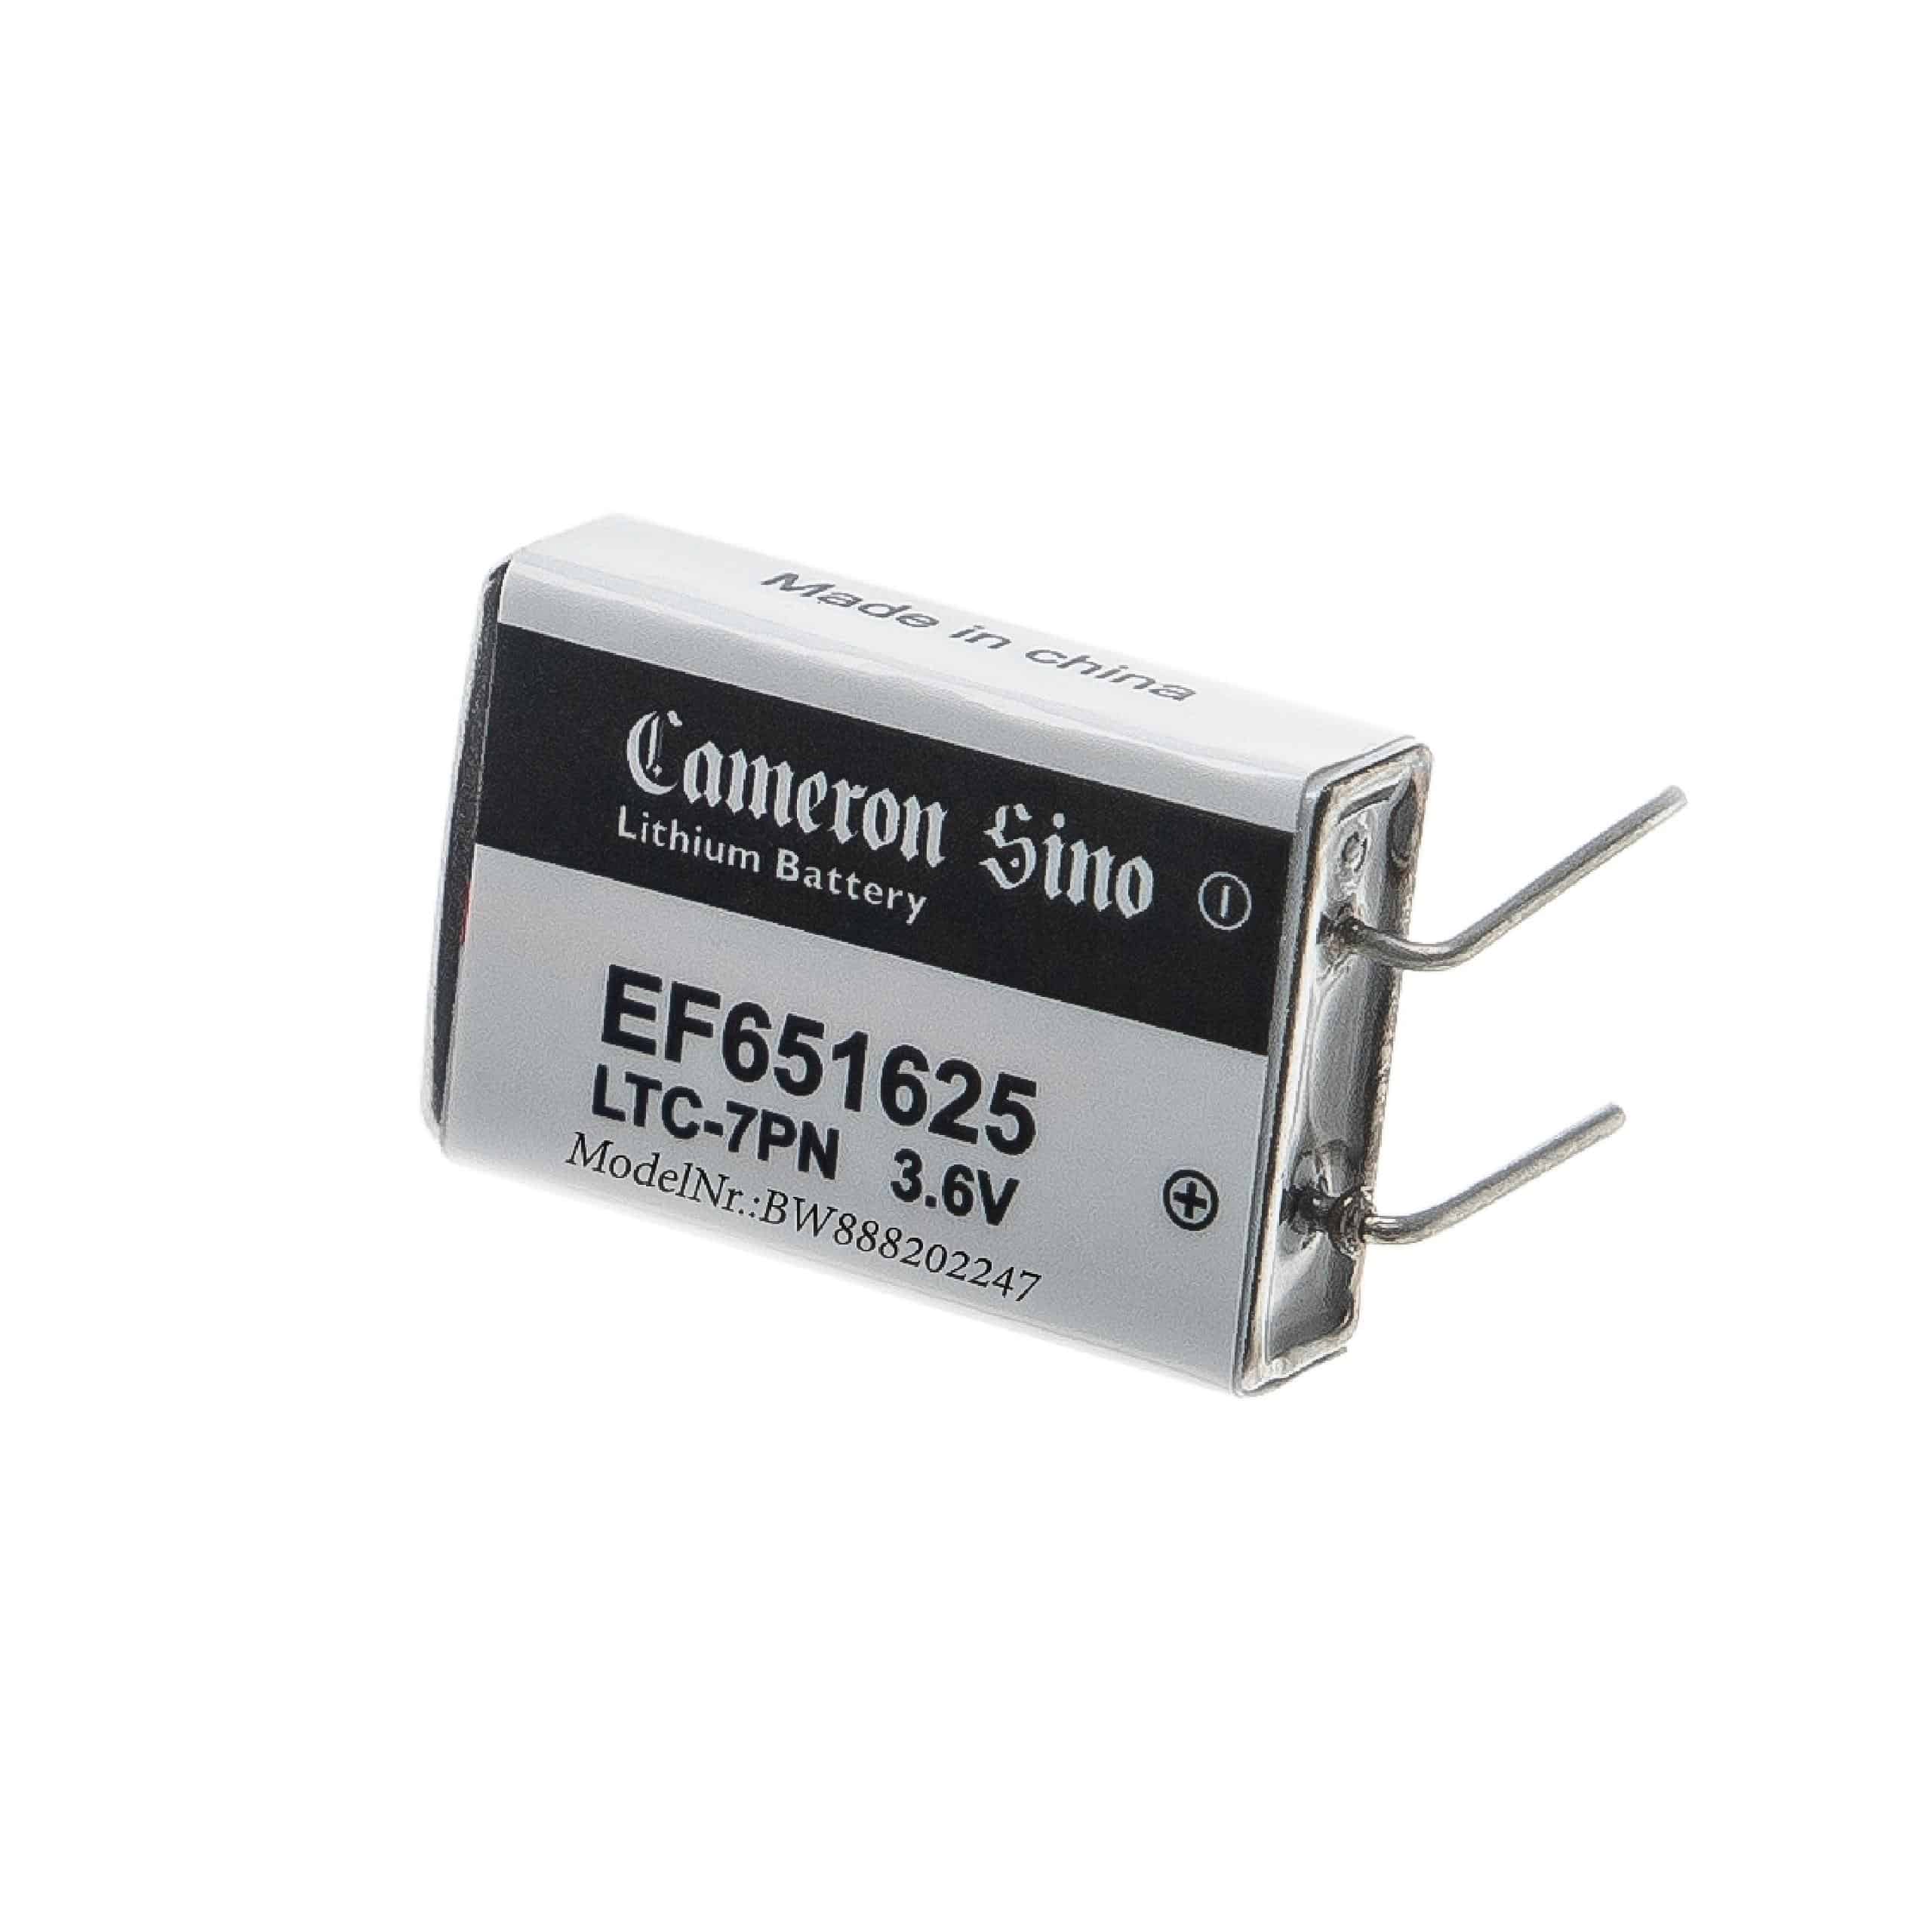 EF651625 Spezial-Batterie - 750mAh 3,6V Li-SOCl2